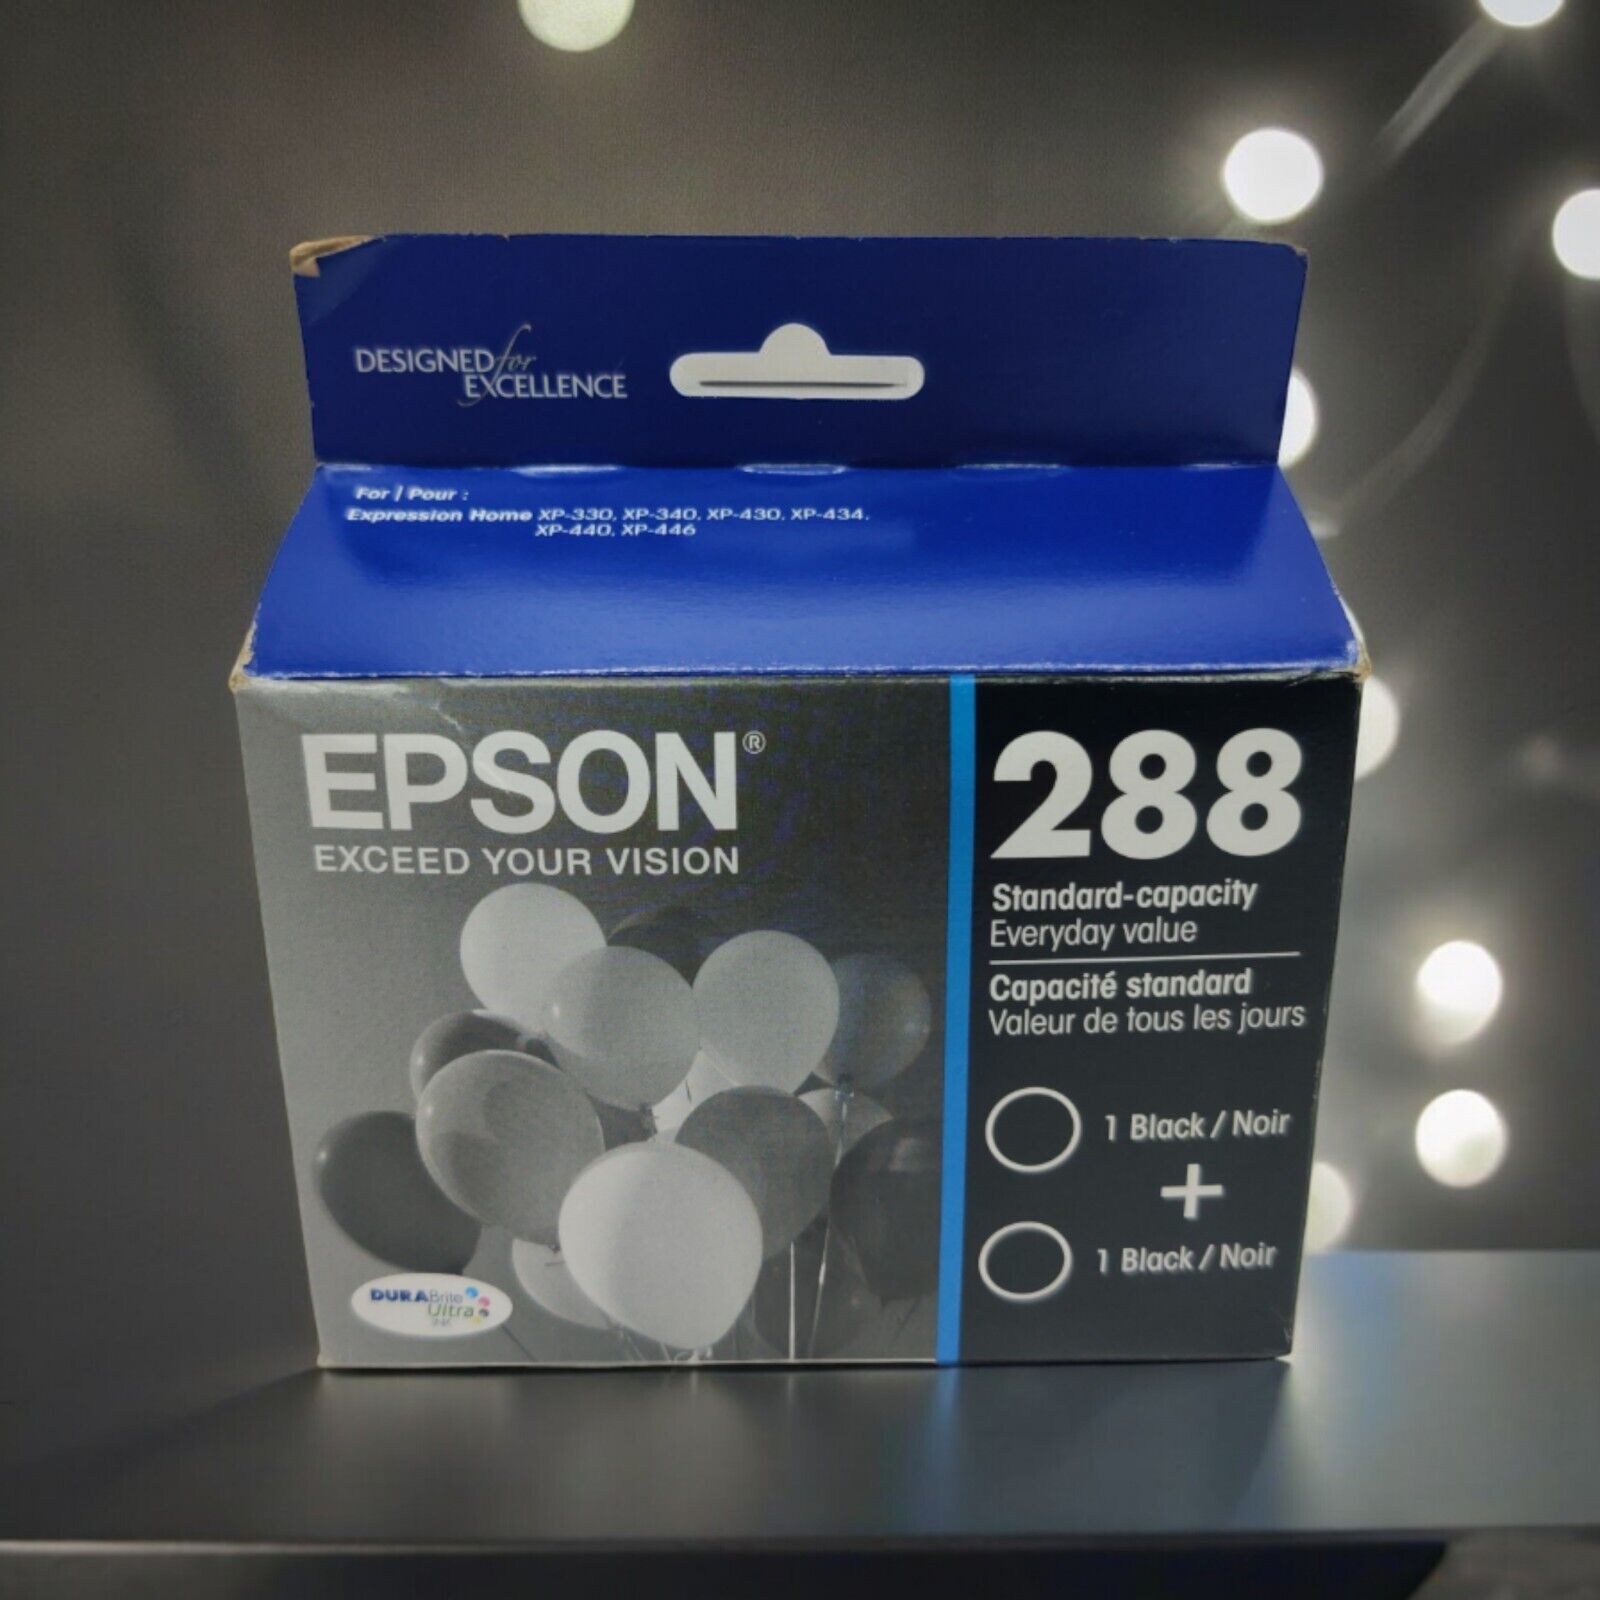 Epson 288 Standard Capacity Black Ink Cartridge (2 Pack) EXP 10/2023 OEM